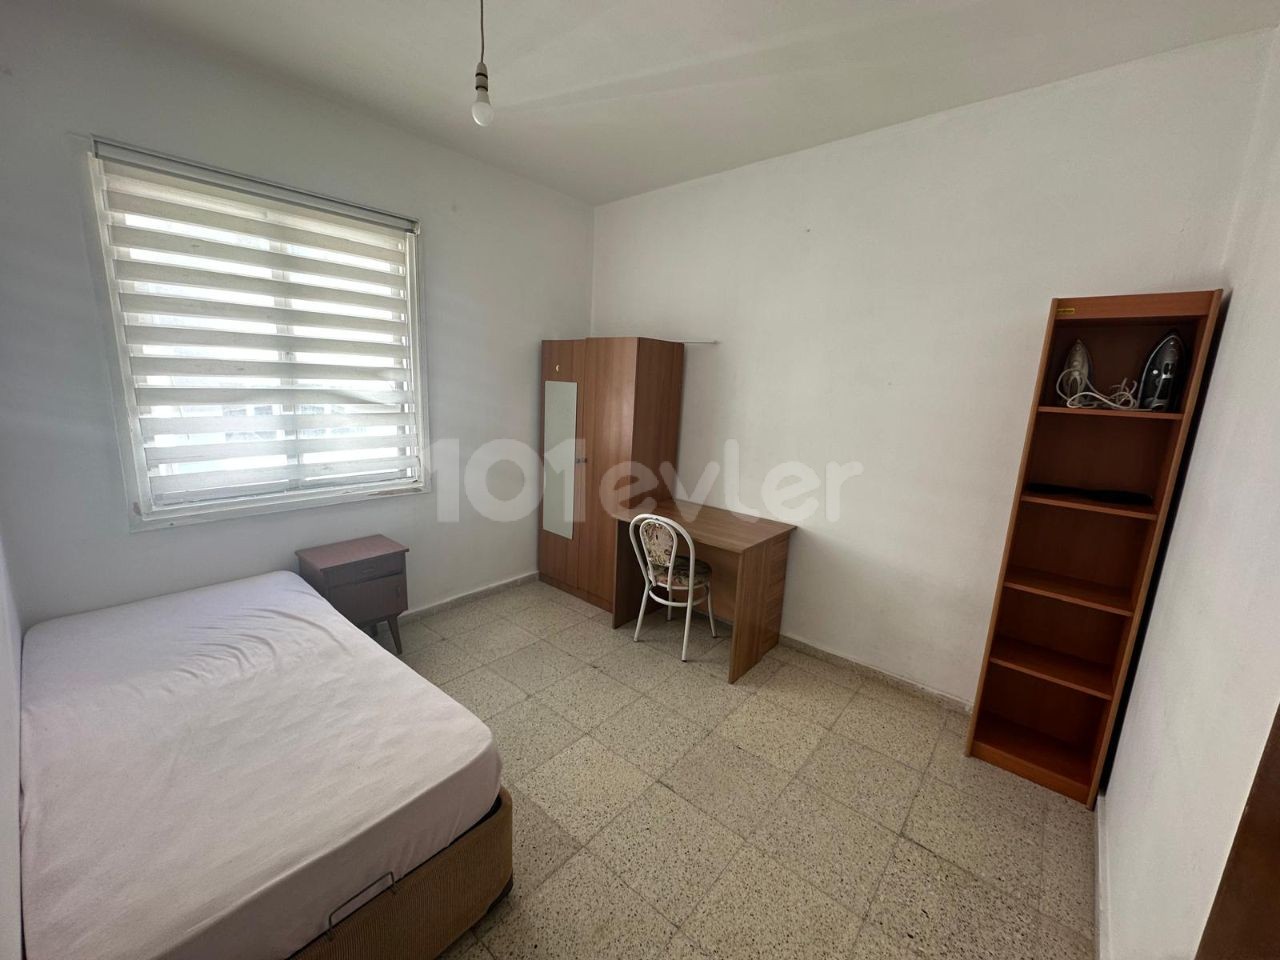 آپارتمان برای اجاره به دانشجو در منطقه KÜÇÜK KAYMAKLI